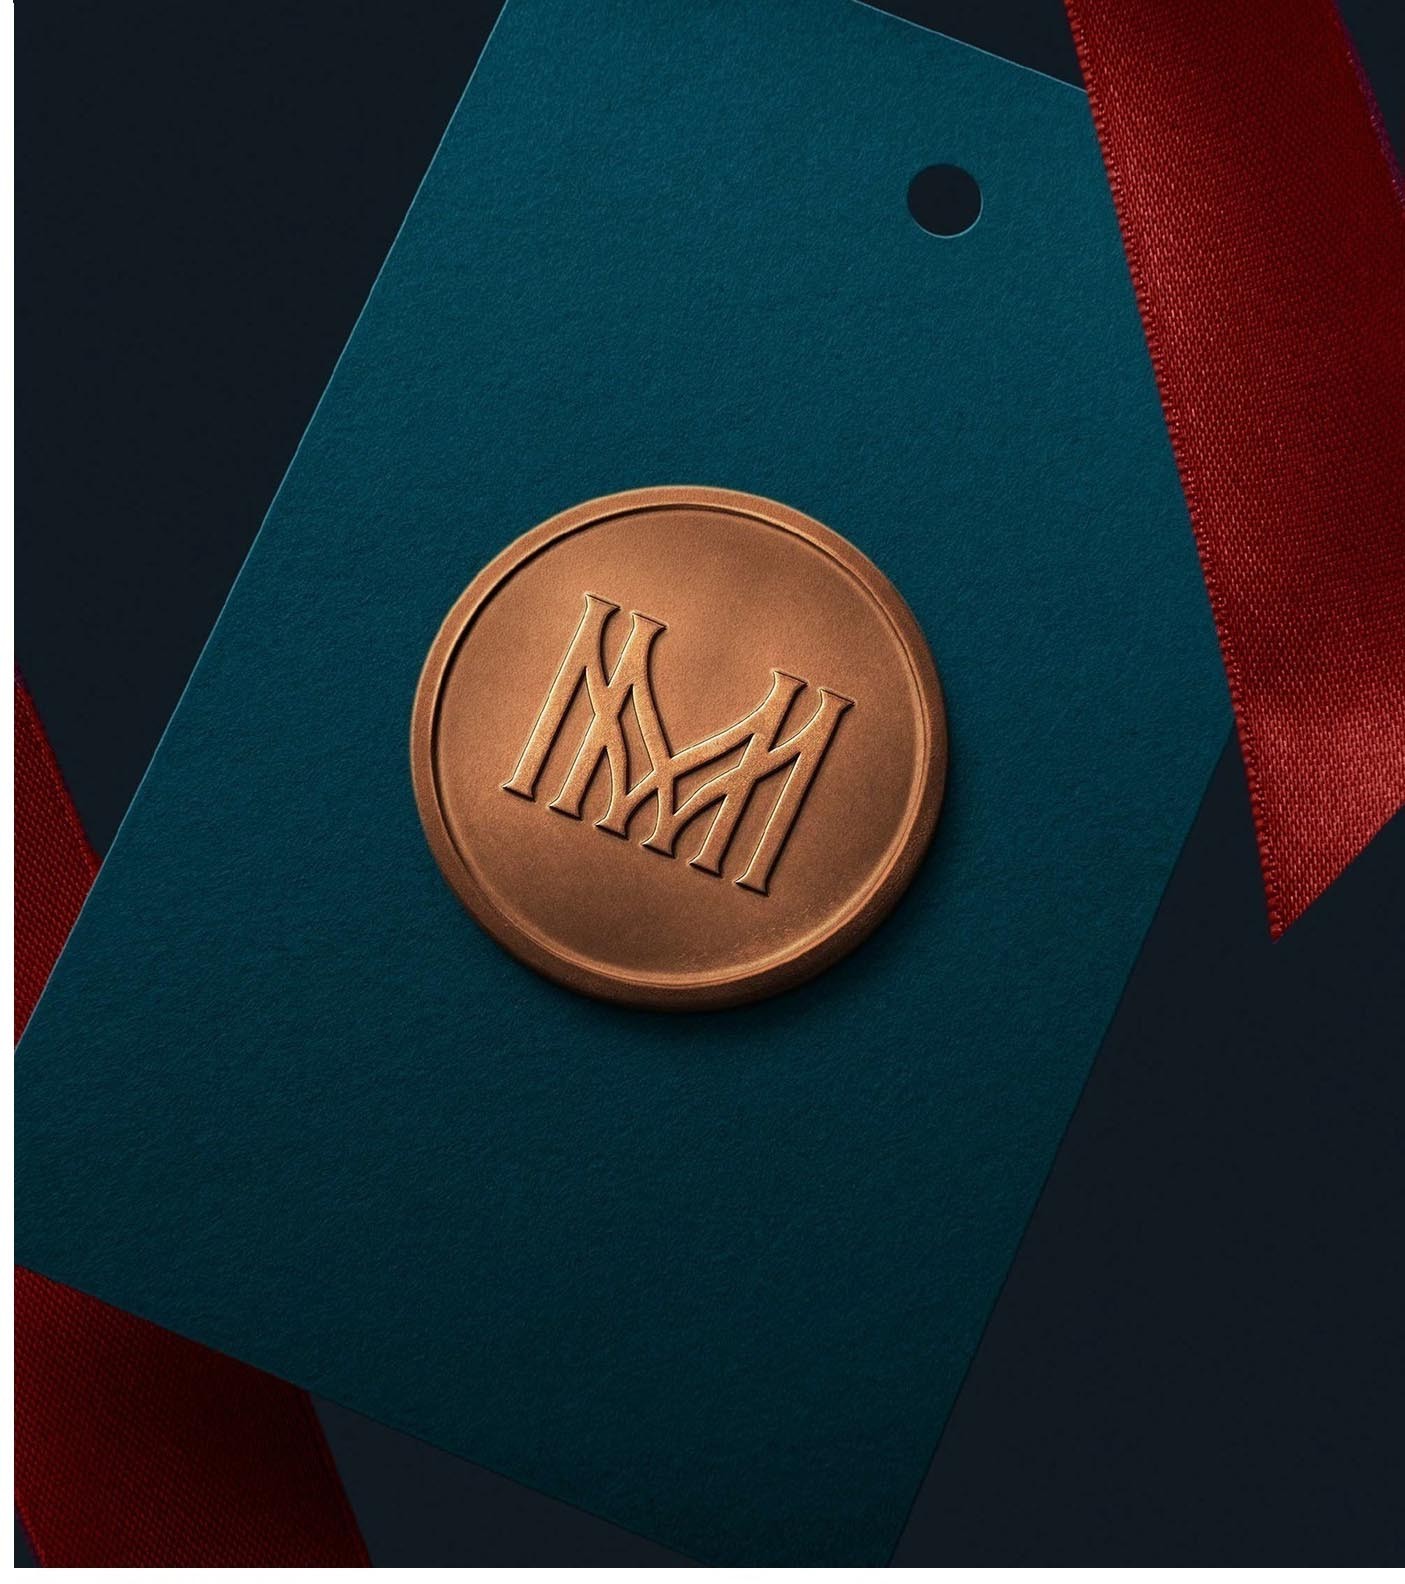 Фото №6: Гостиница Москва - Разработка логотипа и создание бренда в студии брендинга Lobster Agency